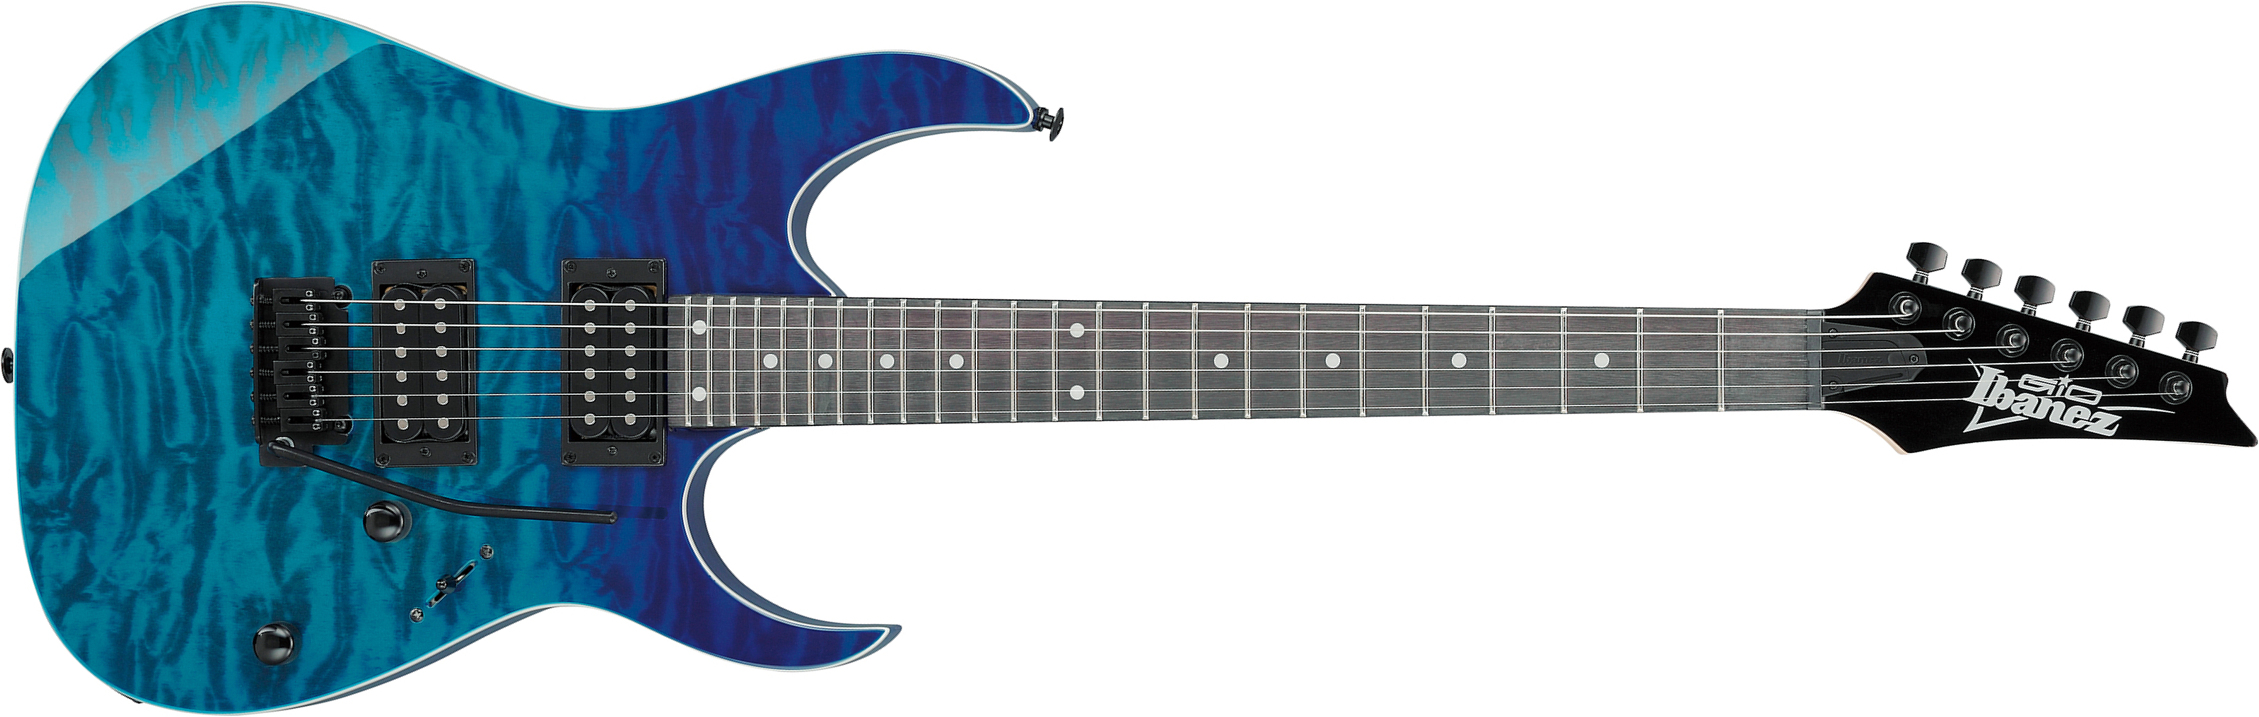 Ibanez Grg120qasp Bgd Gio 2h Trem Pur - Blue Gradation - E-Gitarre aus Metall - Main picture